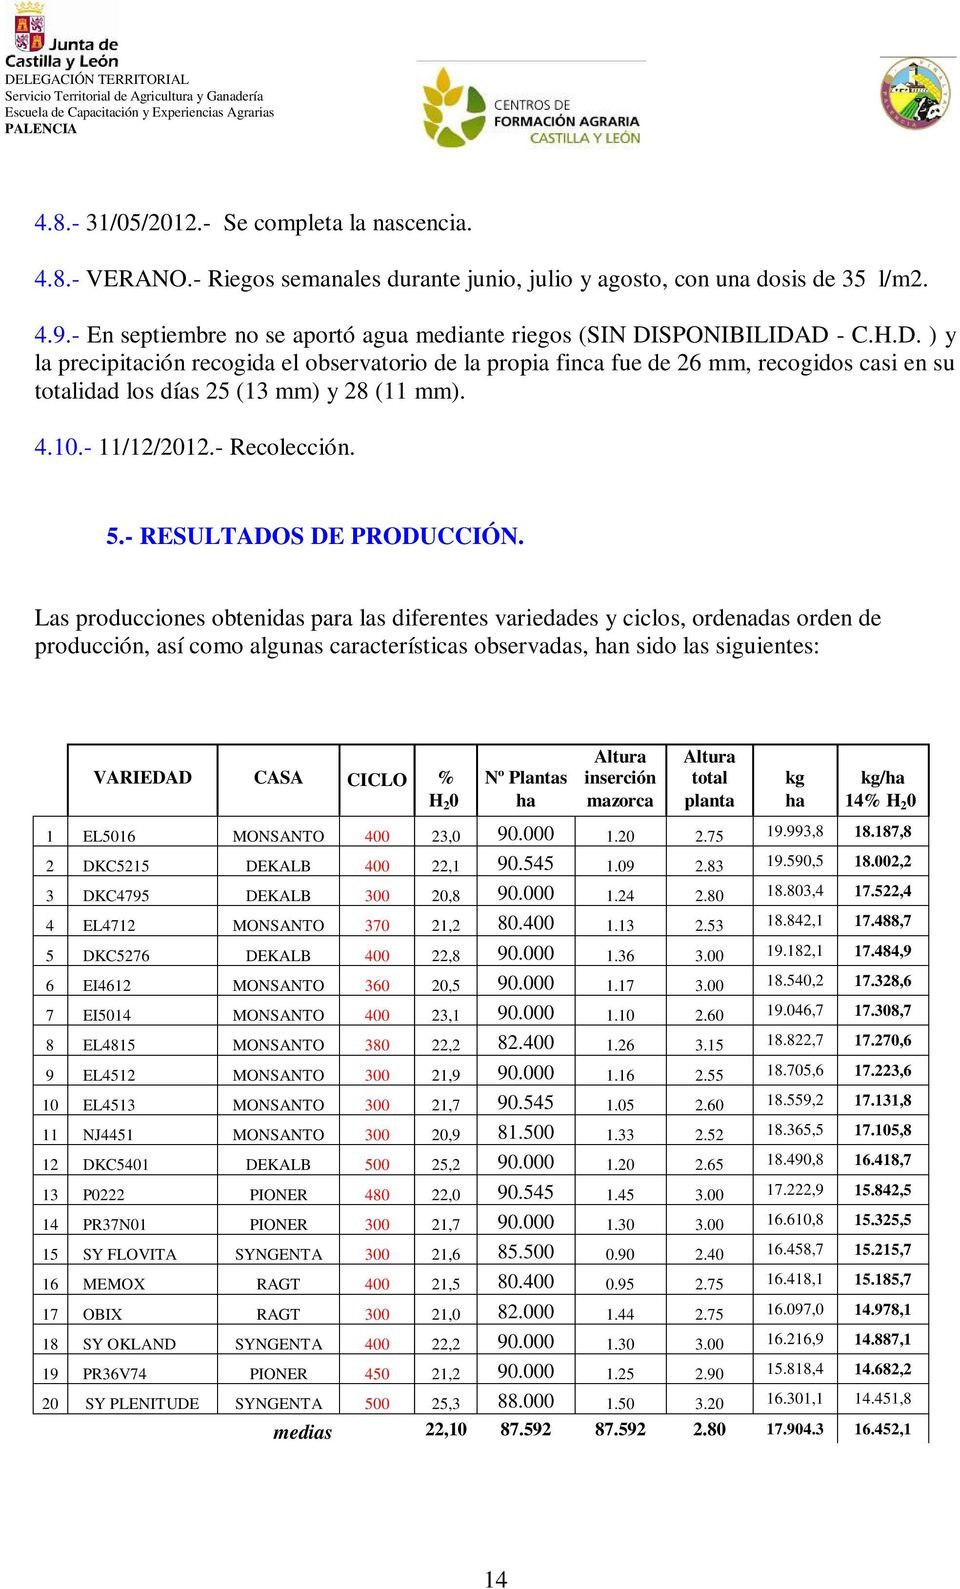 SPONIBILIDAD - C.H.D. ) y la precipitación recogida el observatorio de la propia finca fue de 26 mm, recogidos casi en su totalidad los días 25 (13 mm) y 28 (11 mm). 4.10.- 11/12/2012.- Recolección.